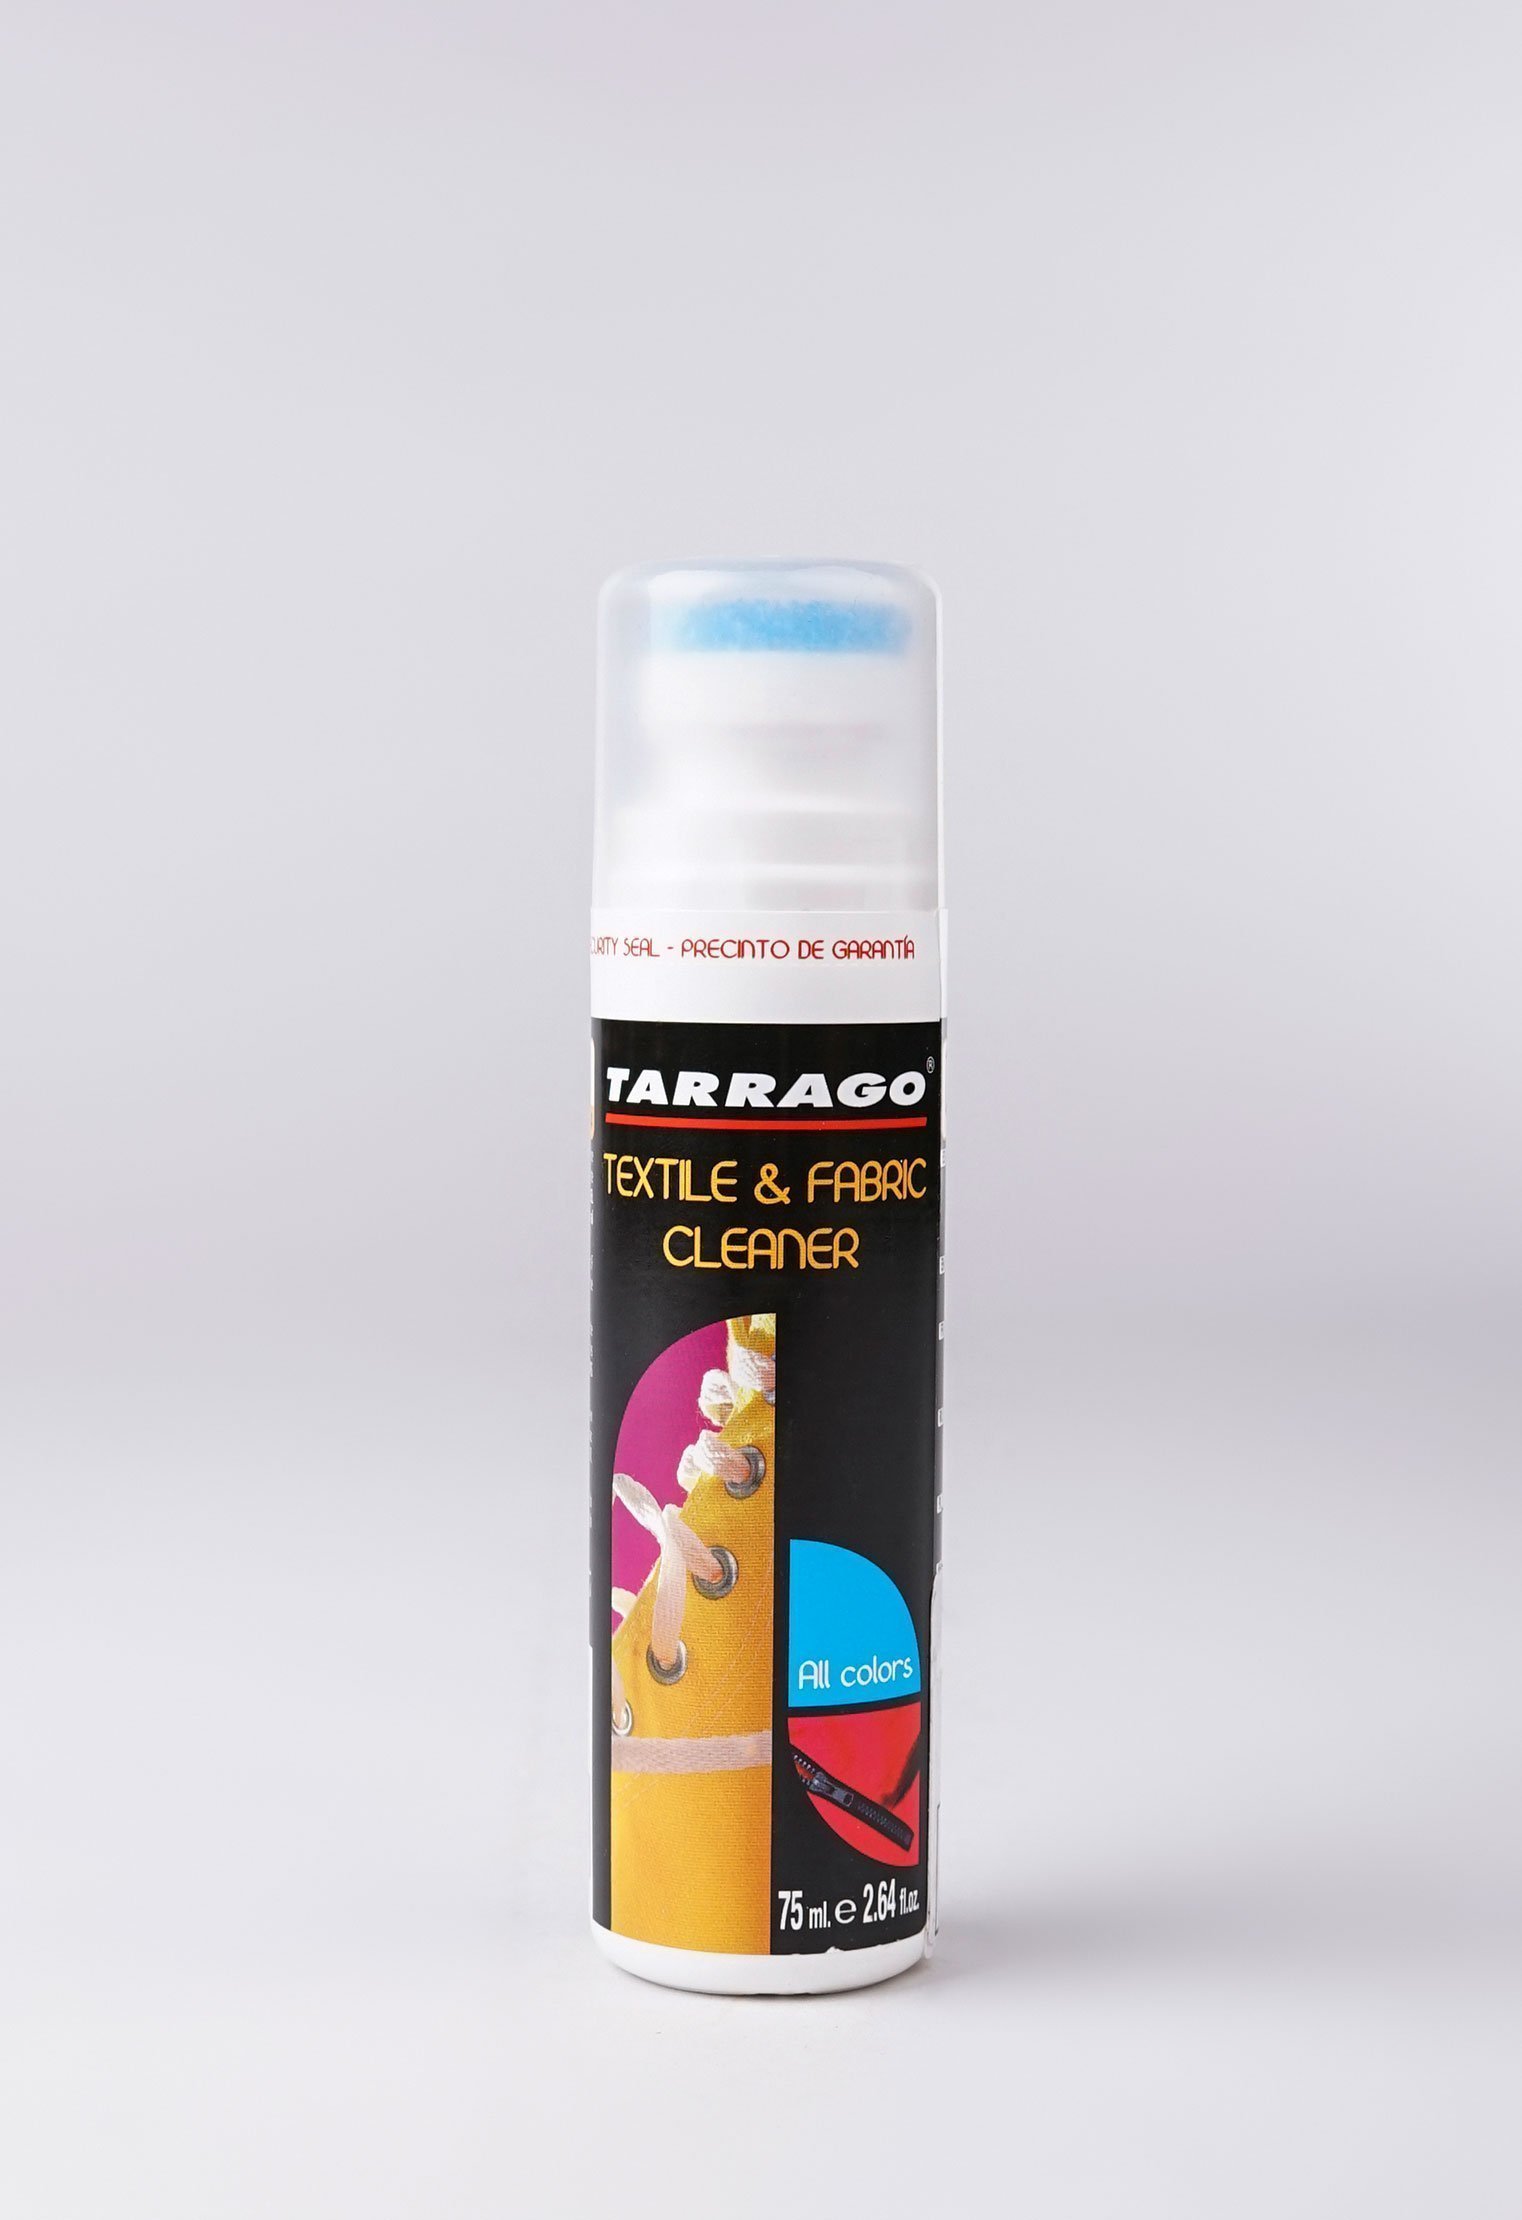 Шампуни и очистители 20-1057 TARRAGO - Очиститель для текстиля TEXTIL CLEANER, флакон, 75мл.